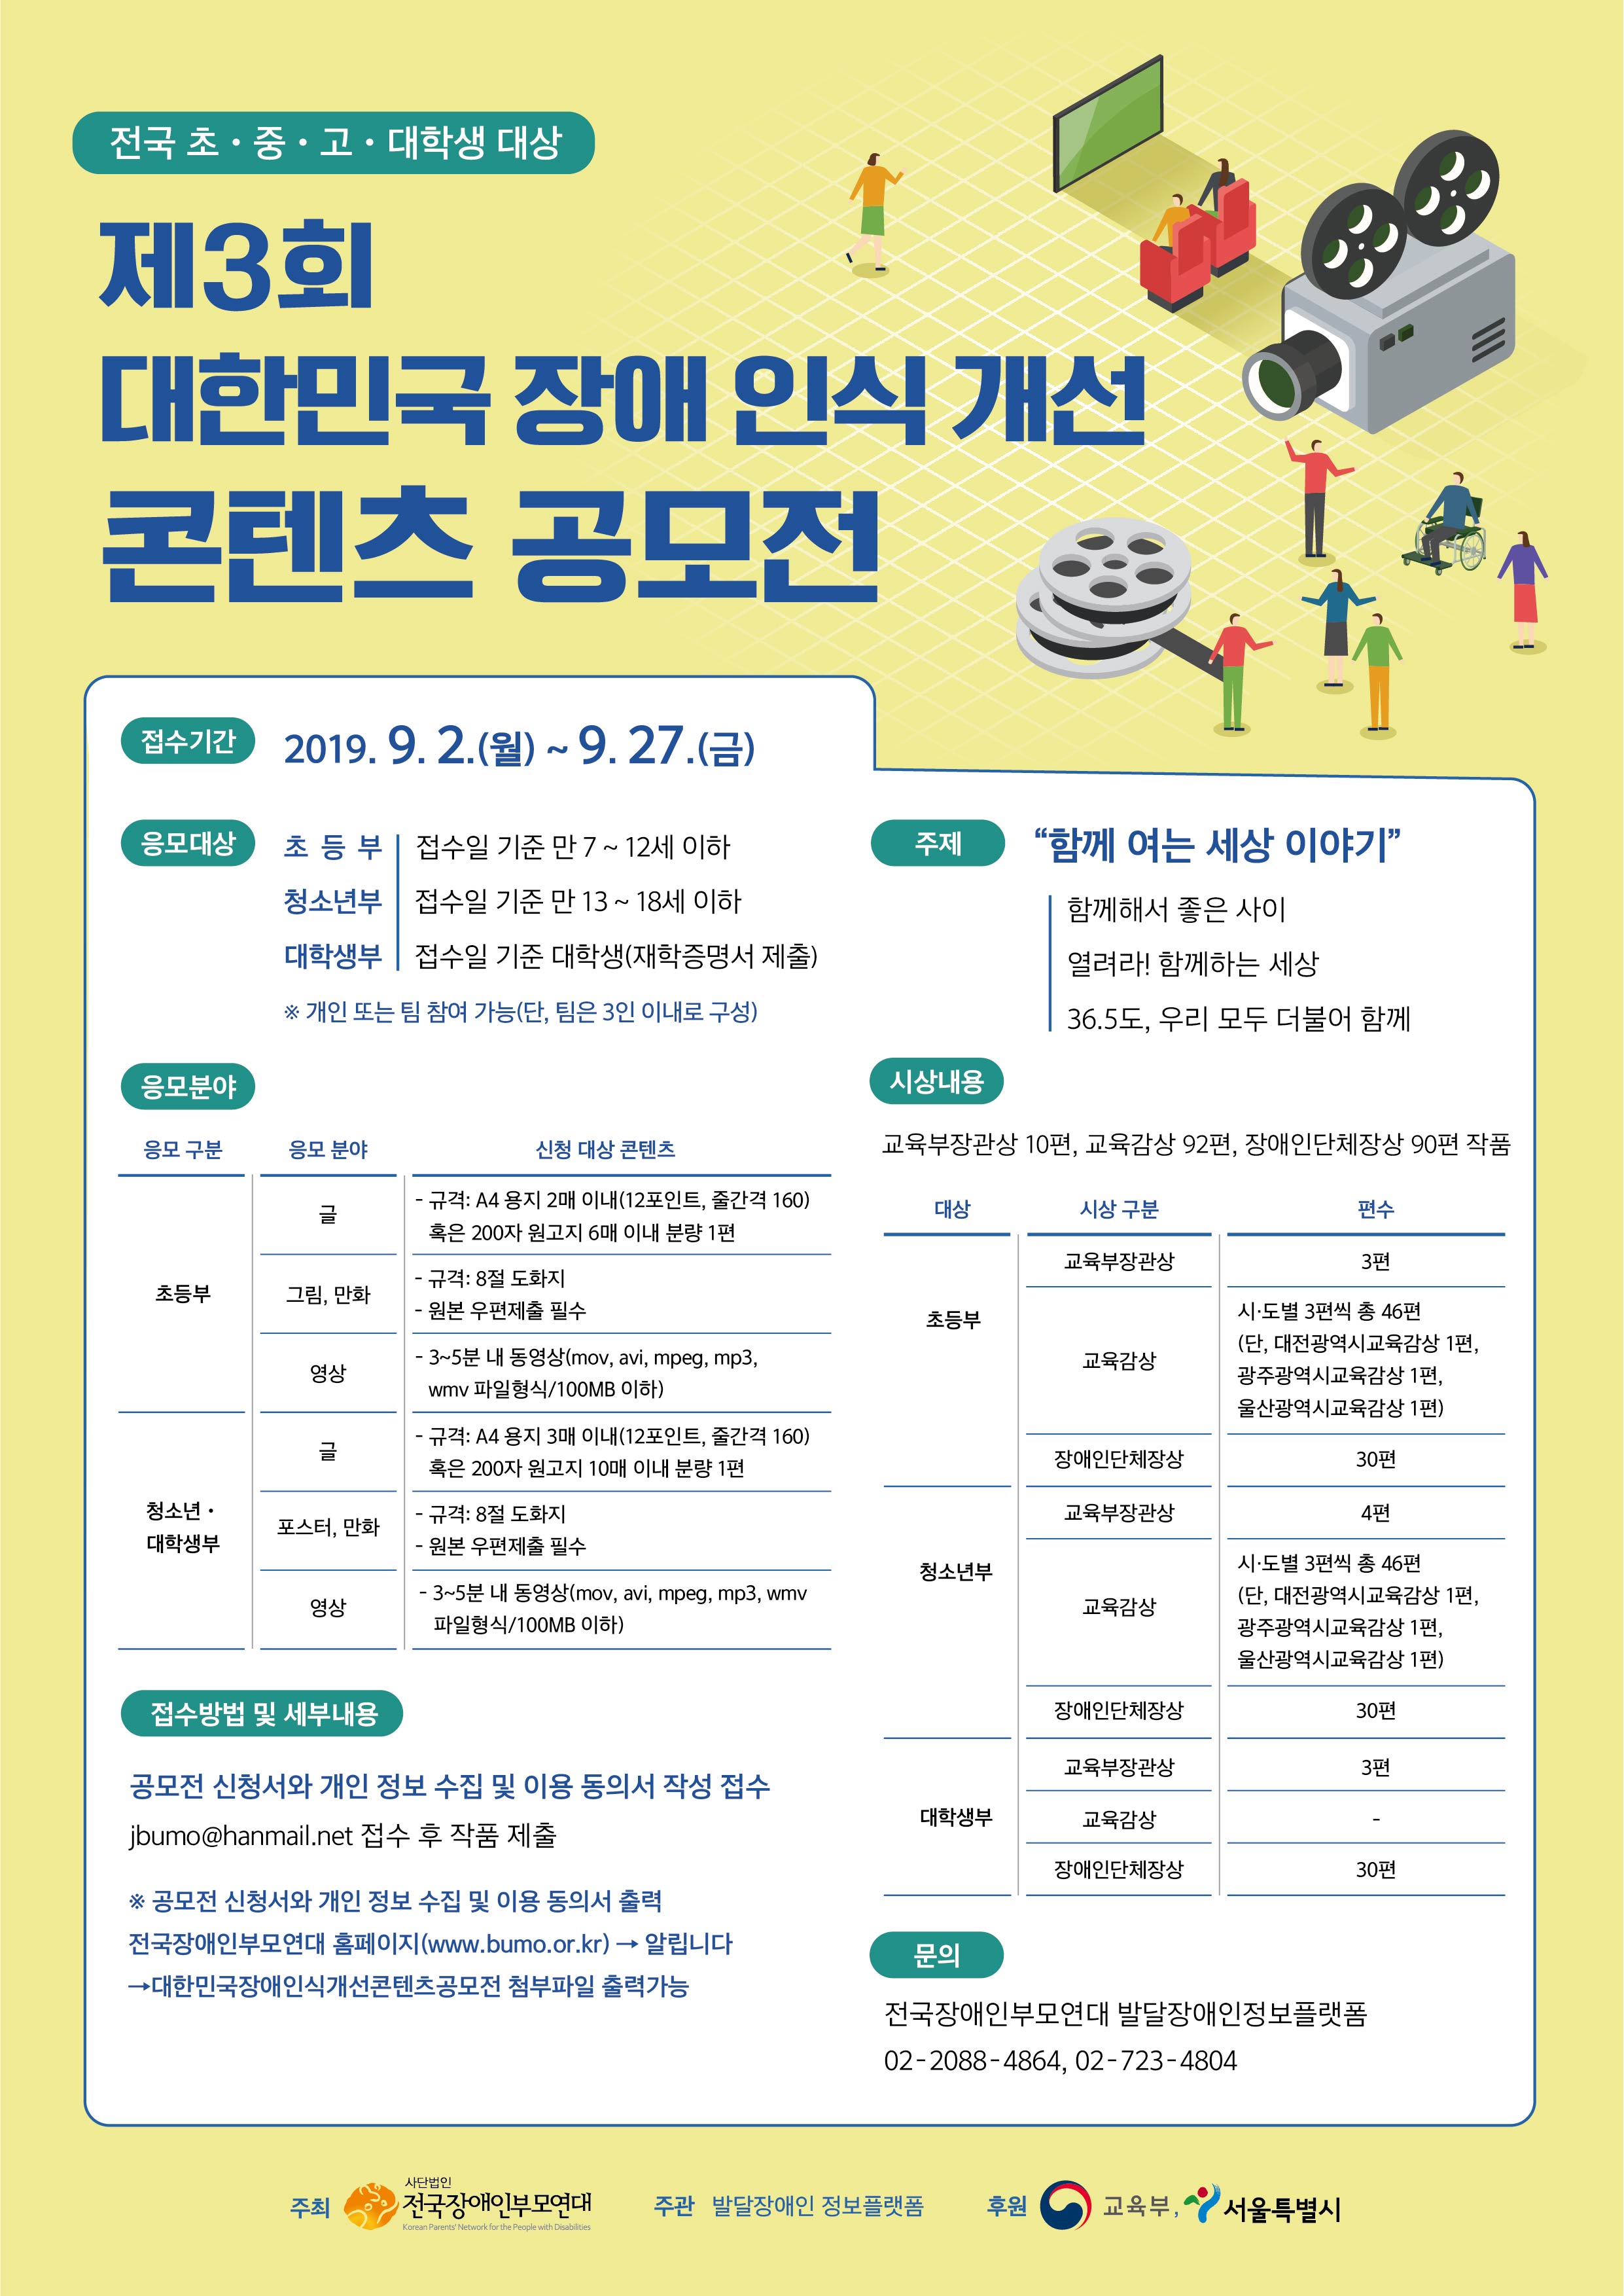 제3회 대한민국 장애 인식 개선 콘텐츠 공모전 개최 안내